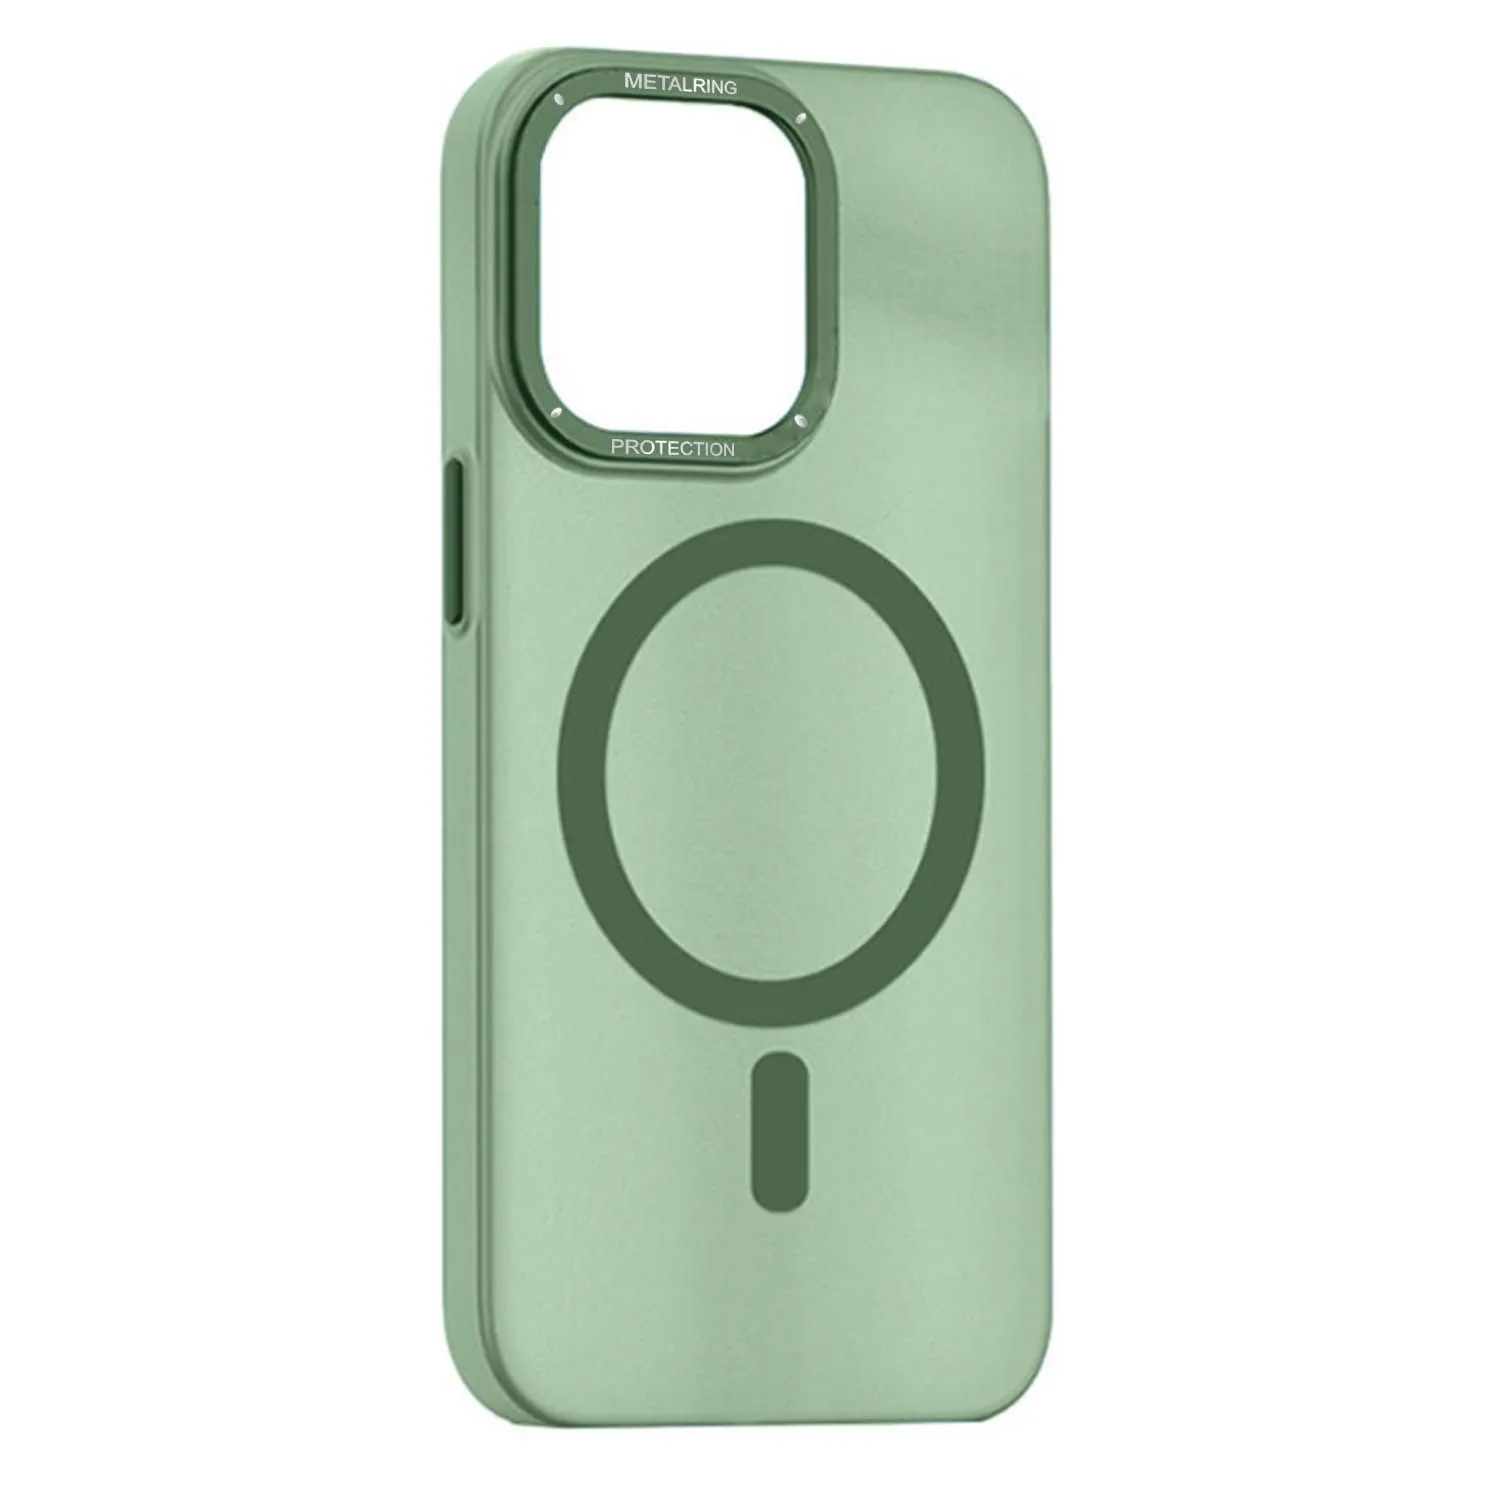 Матовый чехол Apple iPhone 11 с металлической окантовкой с MagSafe (зеленый)